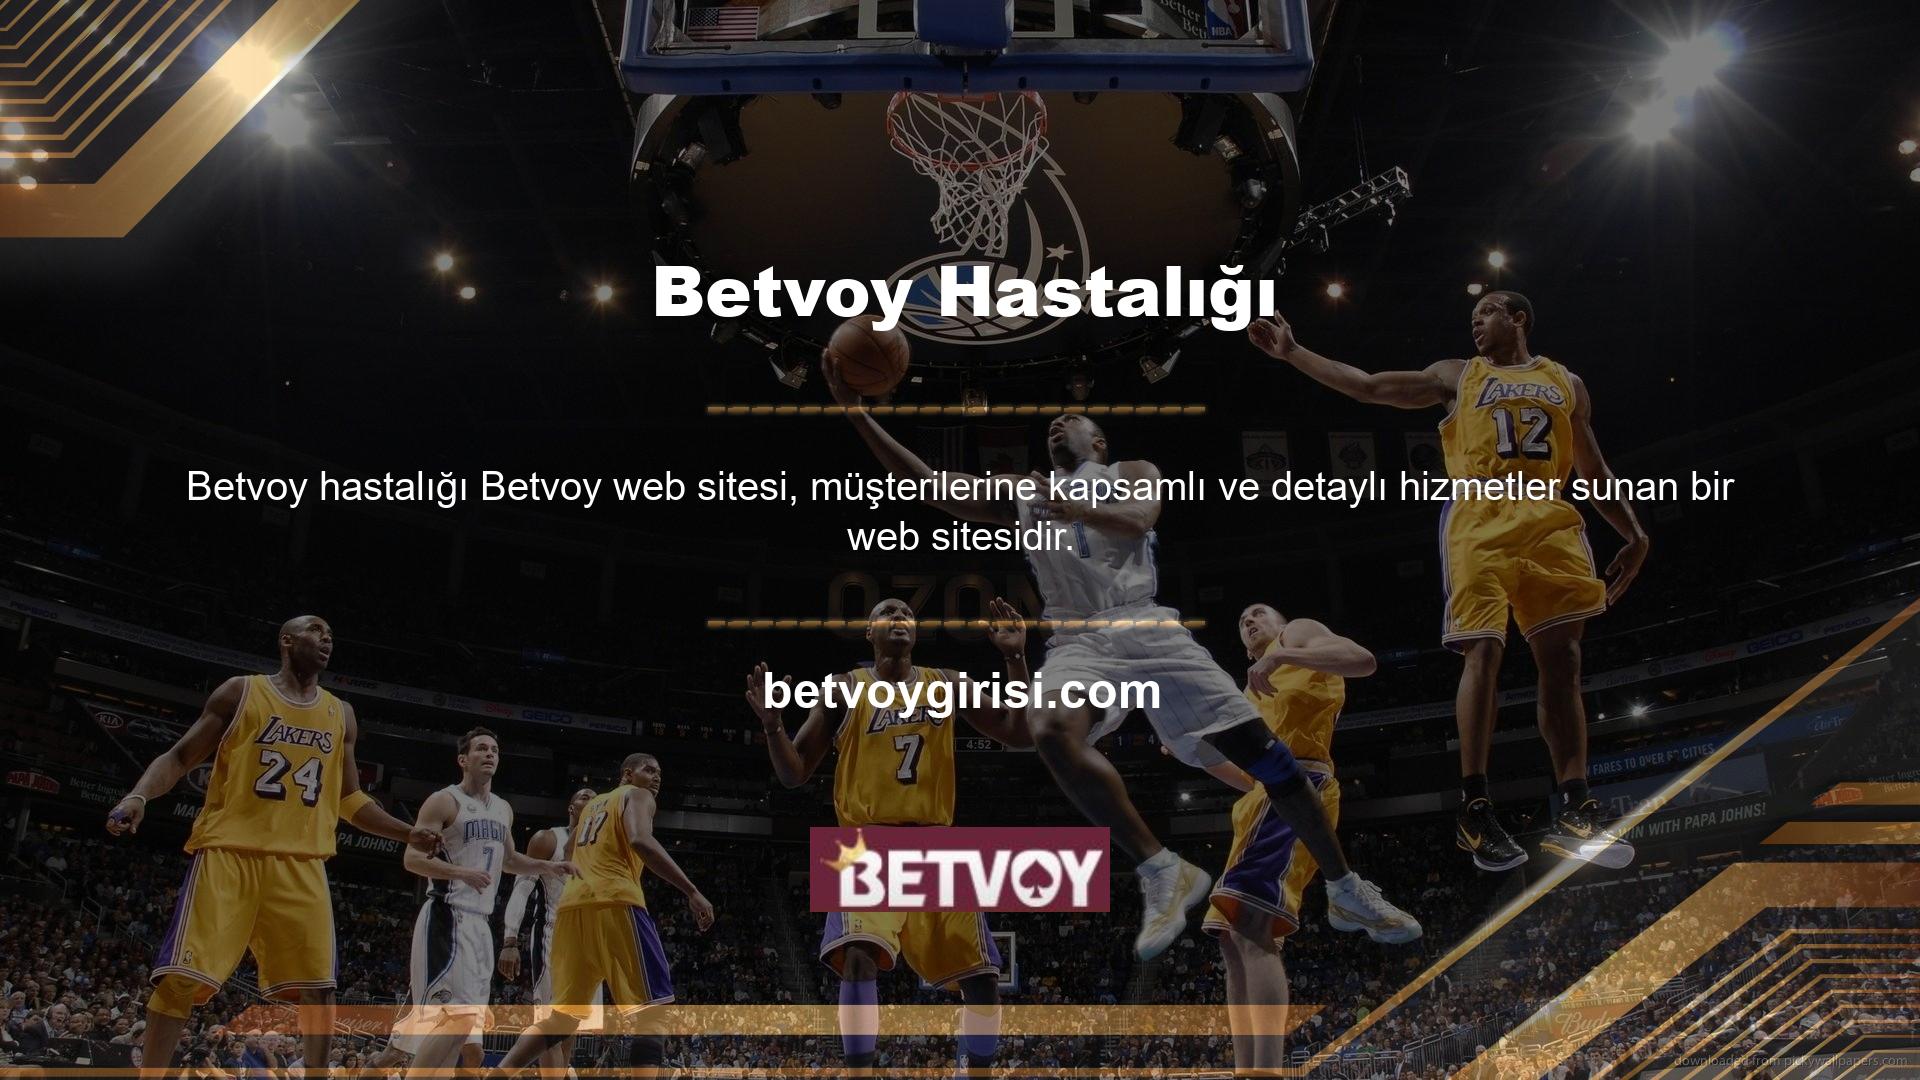 Betvoy bahis sitesinin hizmetlerini değerlendirirken müşteriler bu sitede canlı bahis, canlı casino, casino ve sanal spor gibi seçeneklere sahiptir